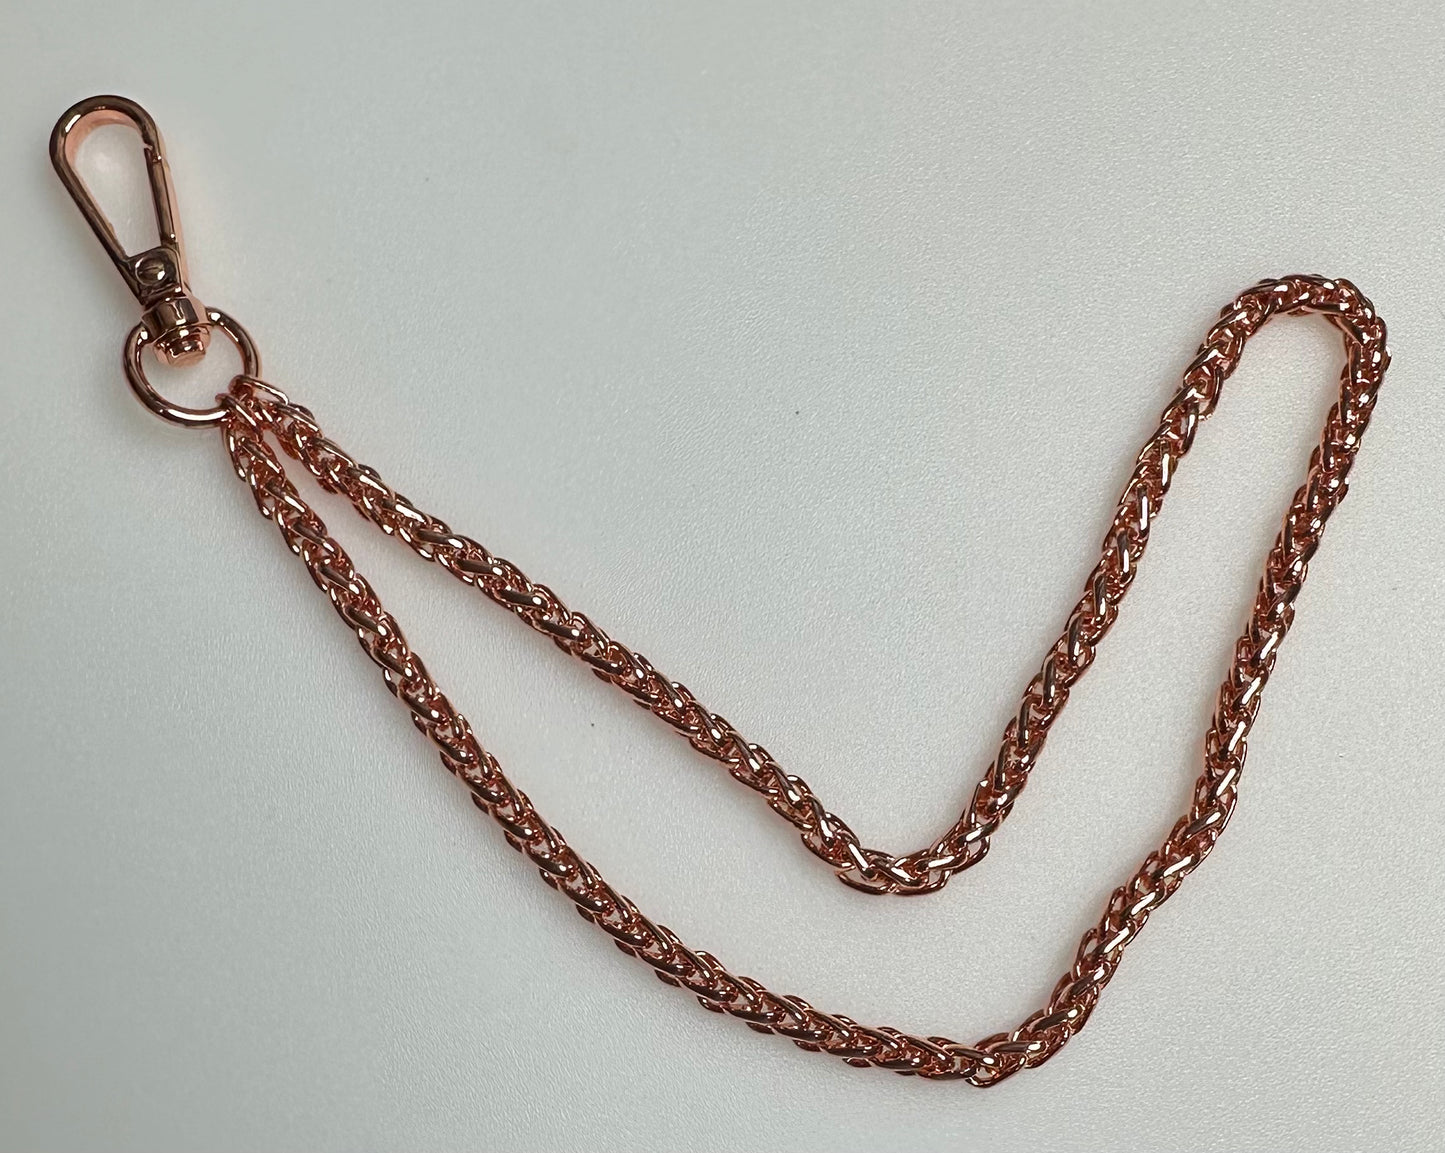 Wristlet Chain